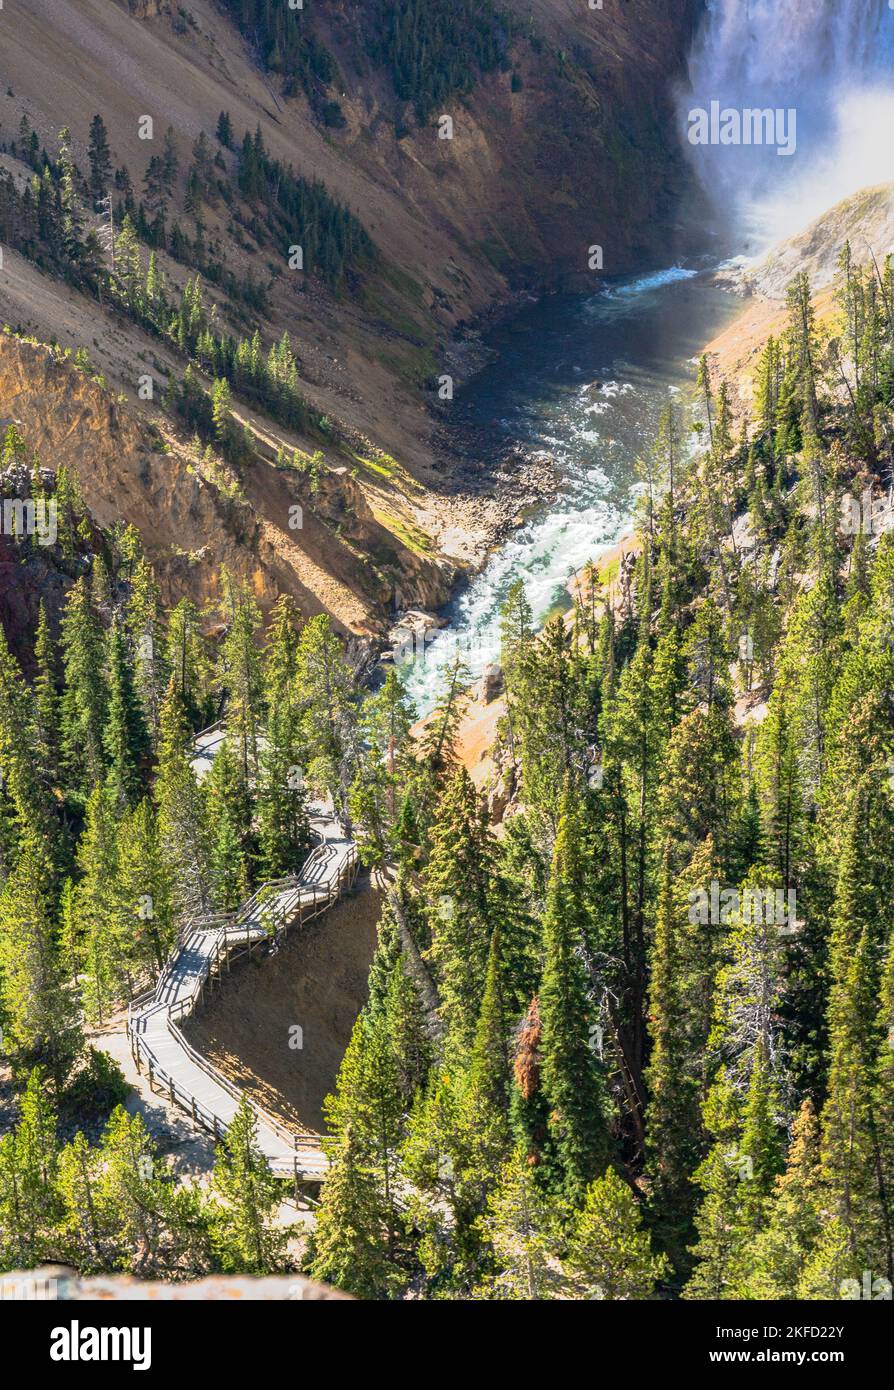 Schauen Sie hinunter oder hinüber zu den unteren Yellowstone Falls im Yellowstone National Park, USA. Das Wasser fließt und stürzt über steile Felsen im Yellowstone Canyon. Stockfoto